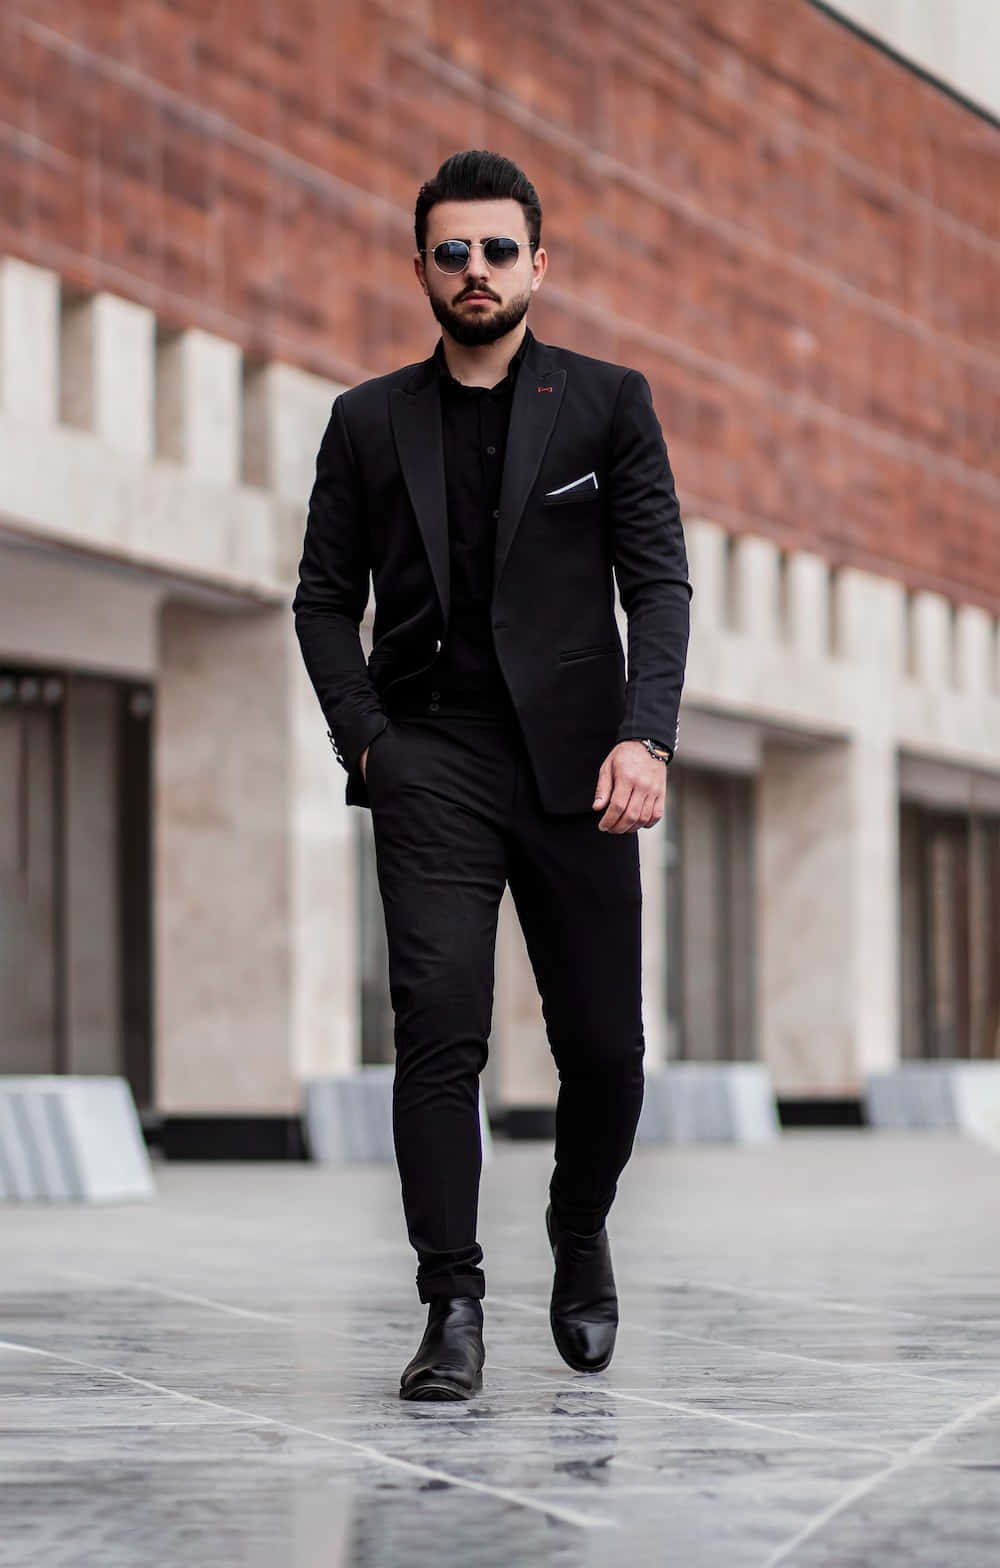 A Man In A Black Suit Walking Down A Street